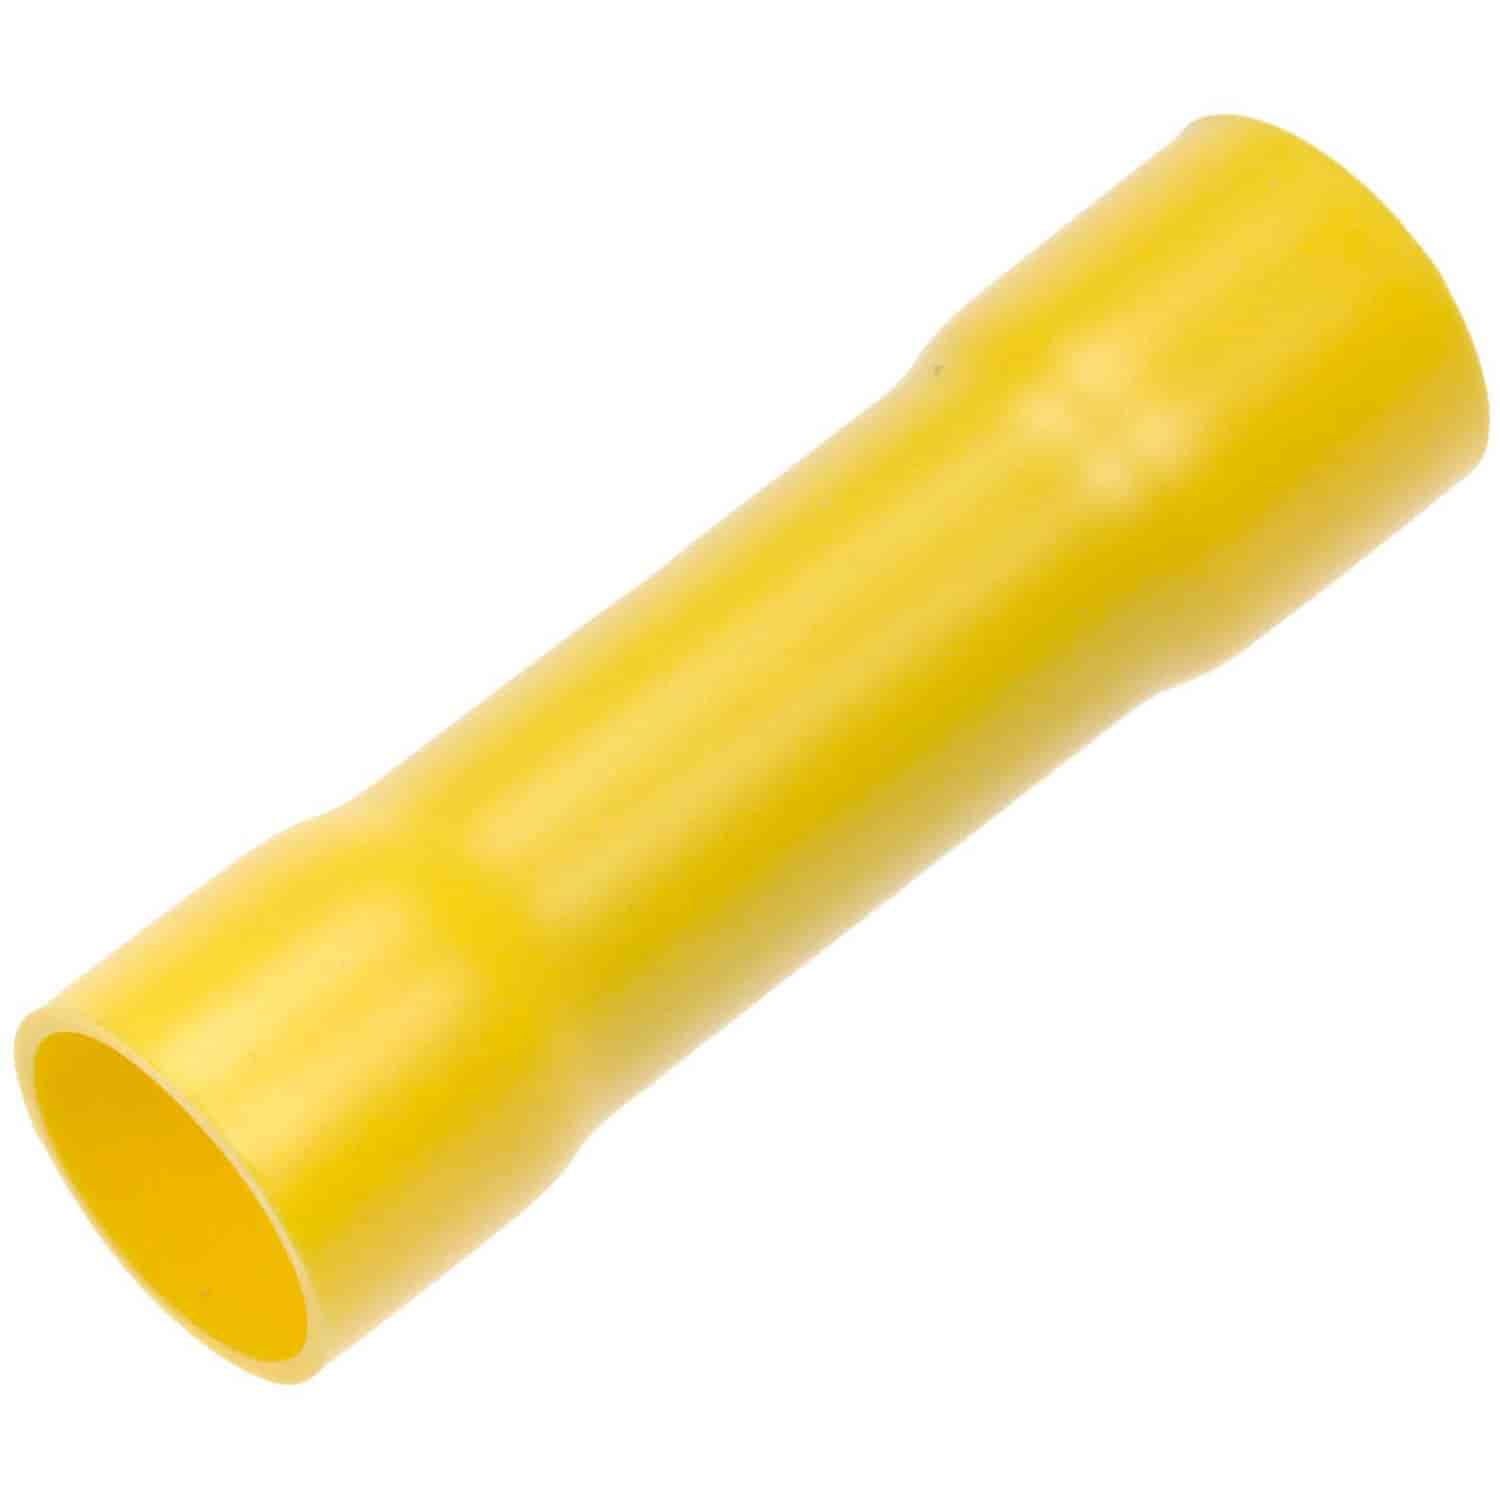 4 Gauge Butt Connector Yellow